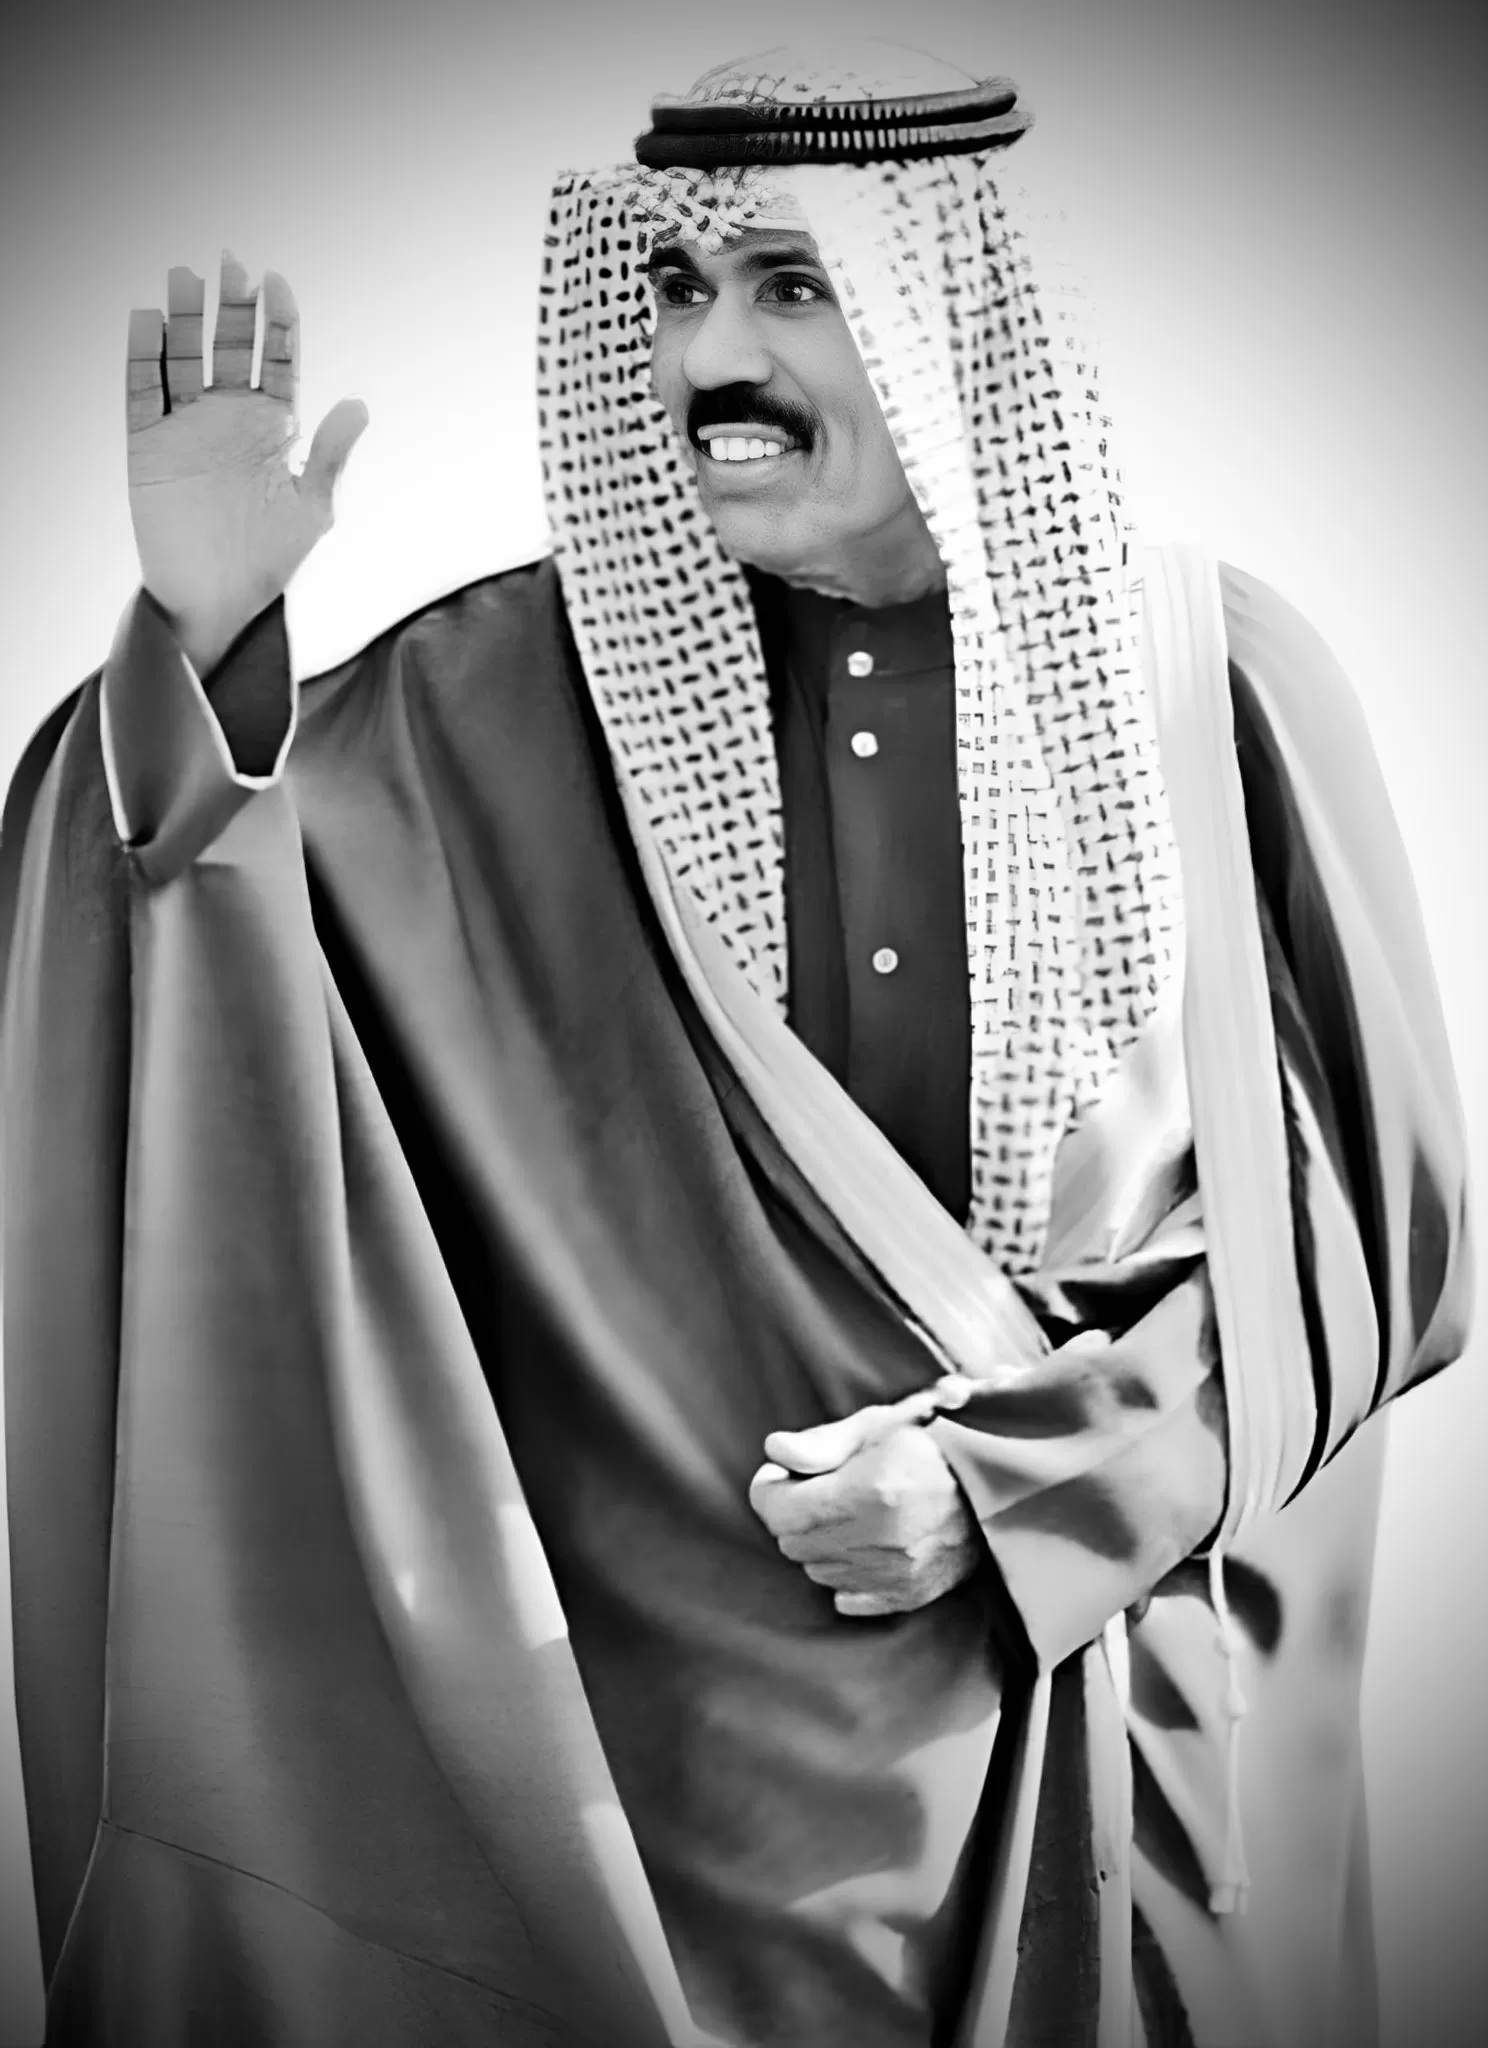 توفي أمير الكويت نواف الأحمد الجابر الصباح عن عمر ناهز 86 عاما